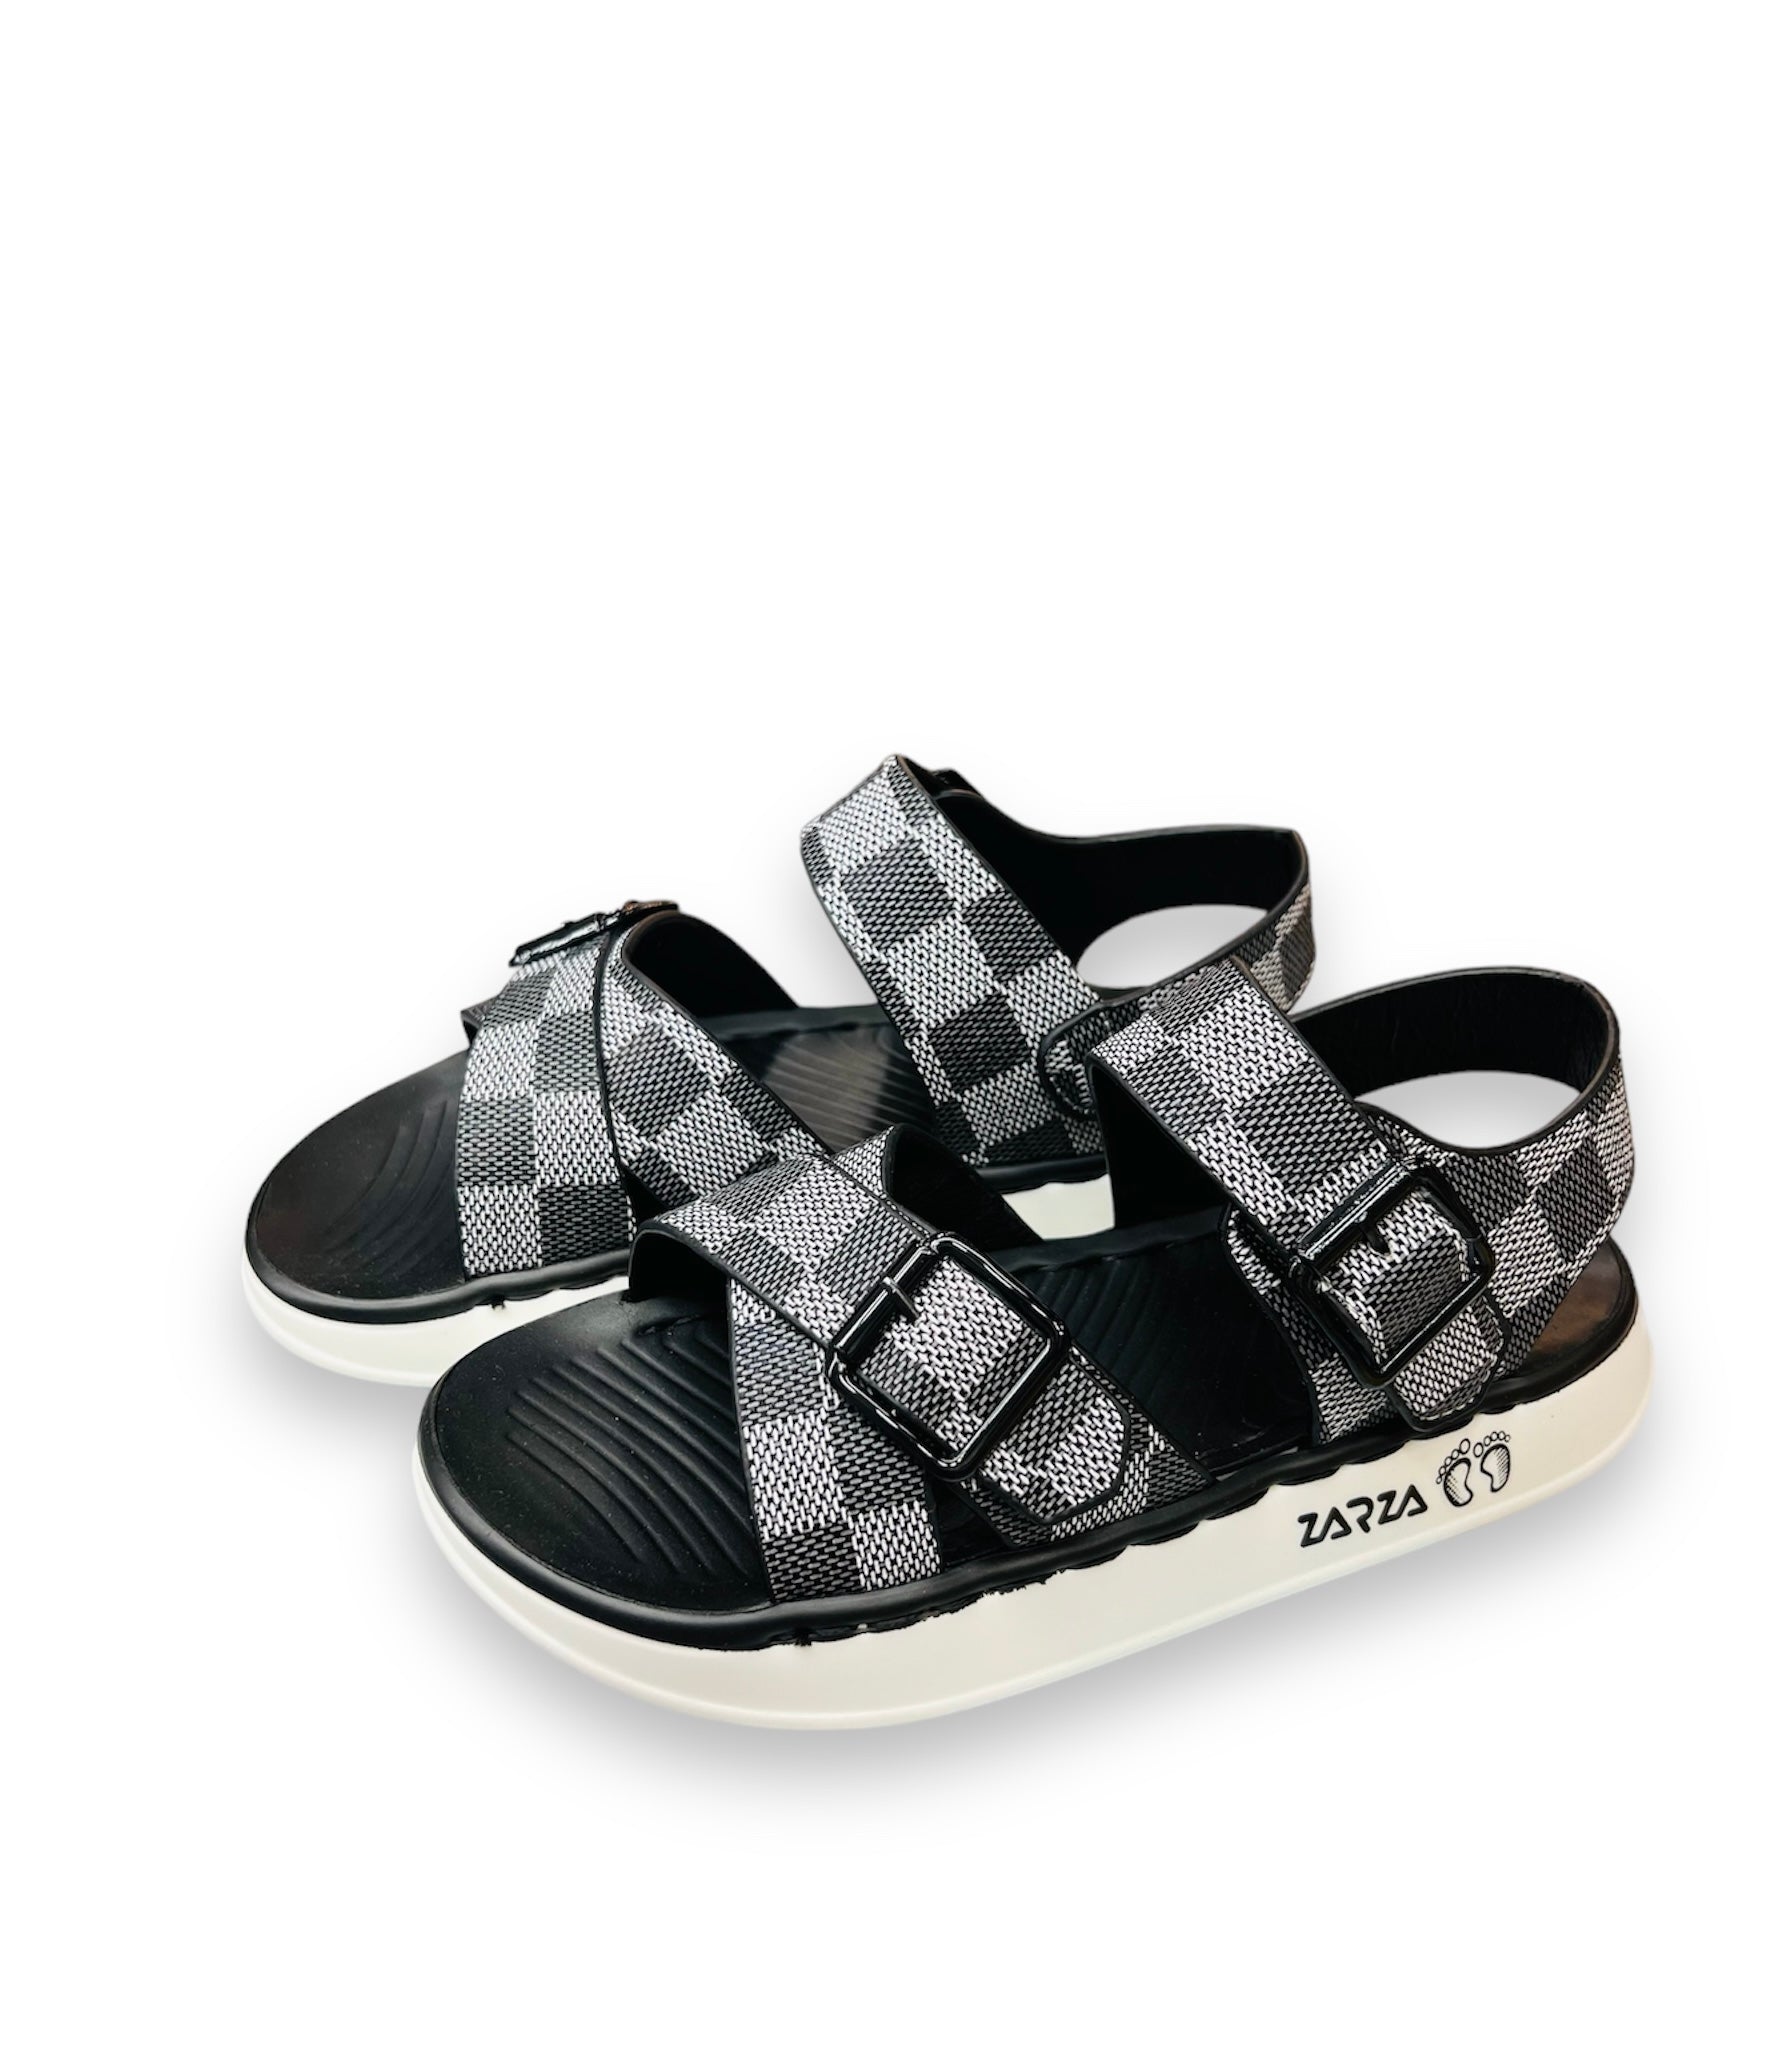 Grey Strap Sandals